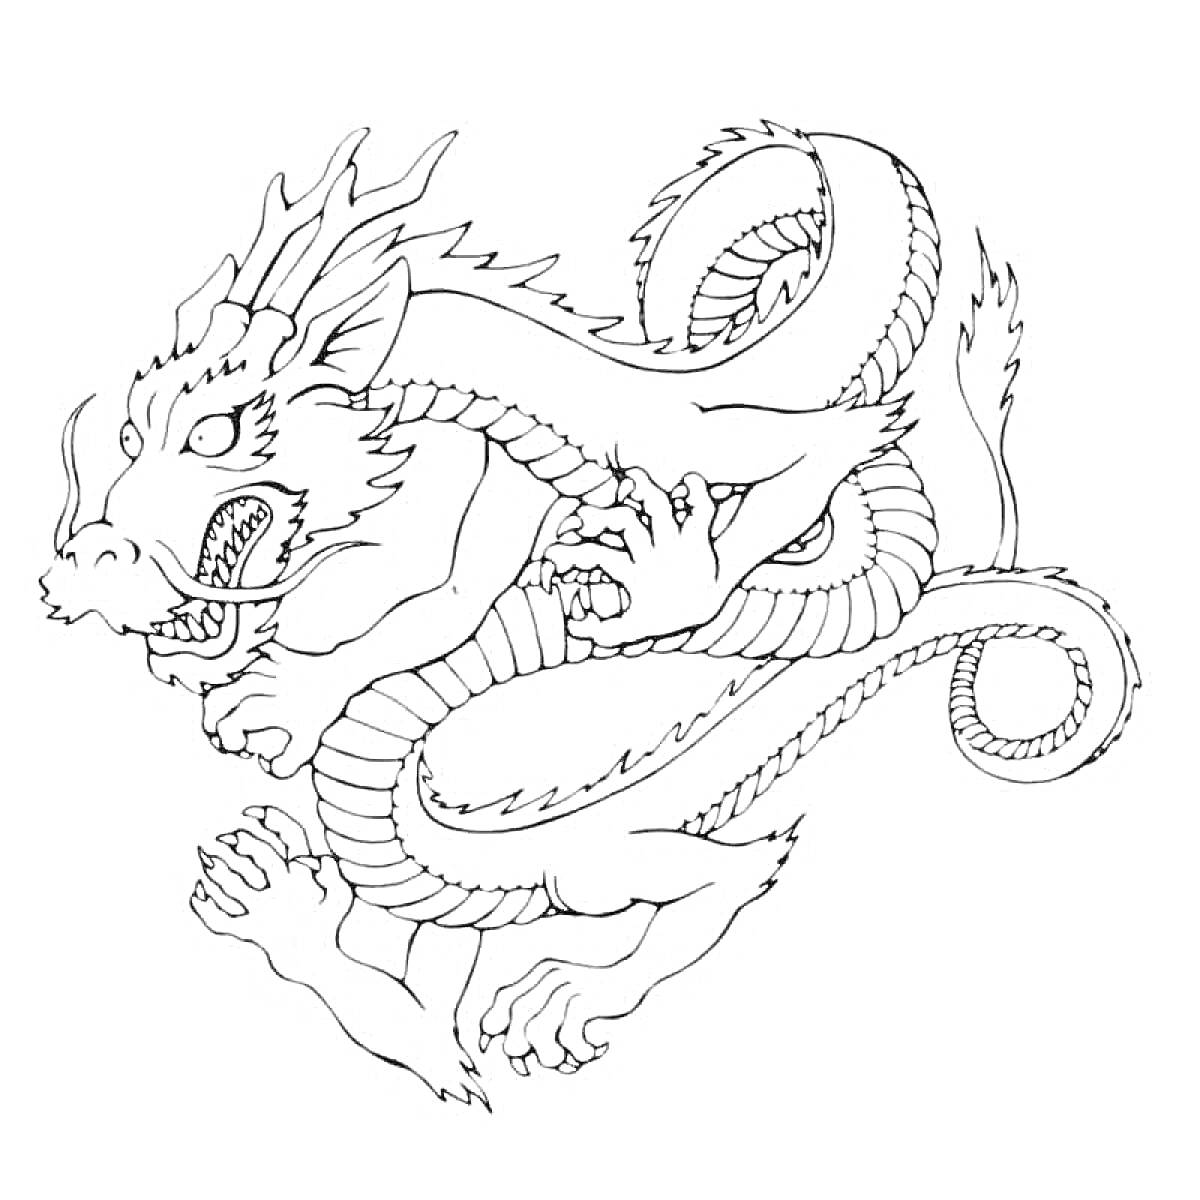 Китайский дракон с когтями и длинным телом